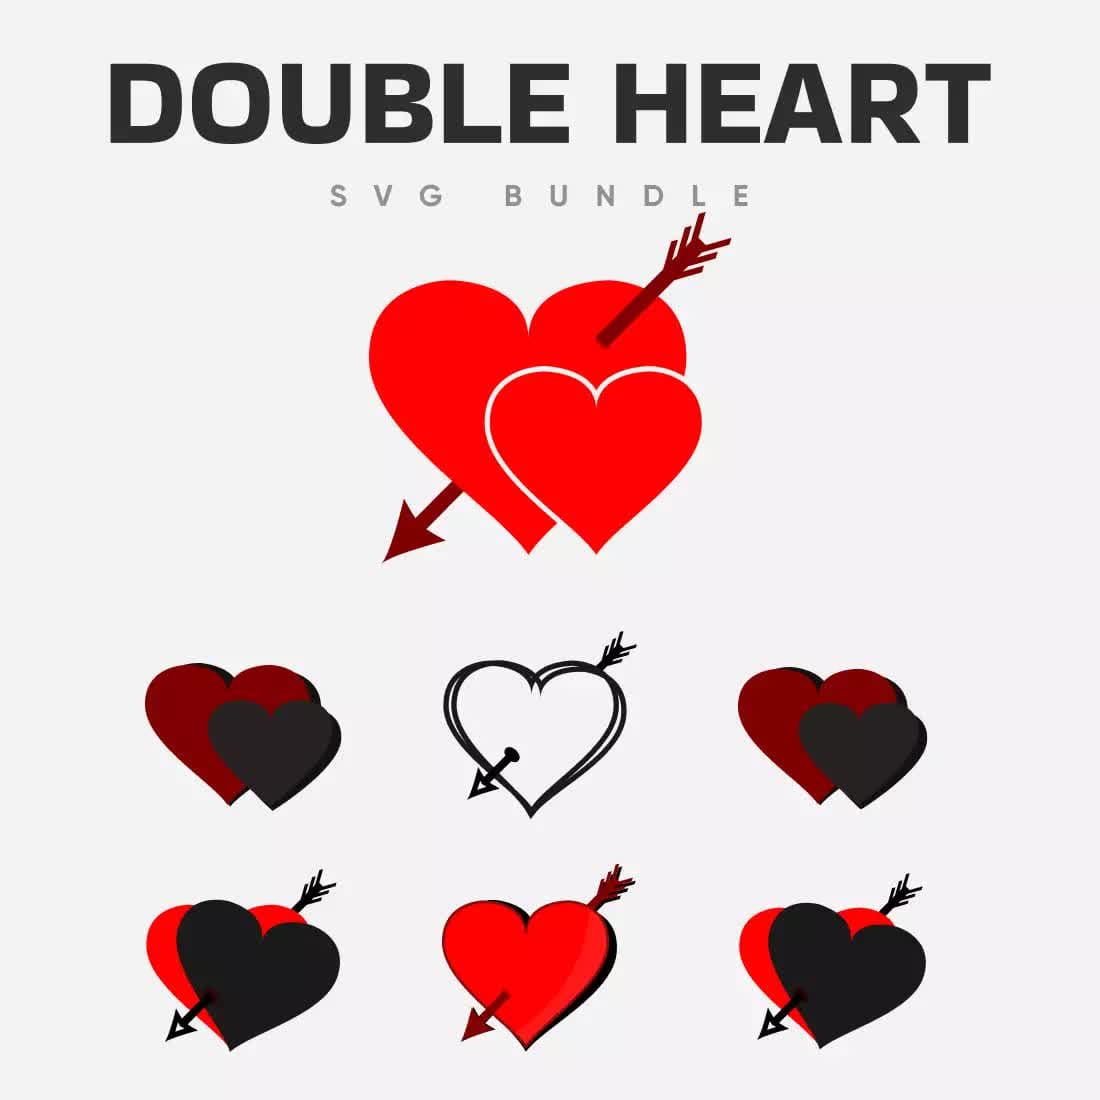 Double Heart SVG Bundle Preview 1.